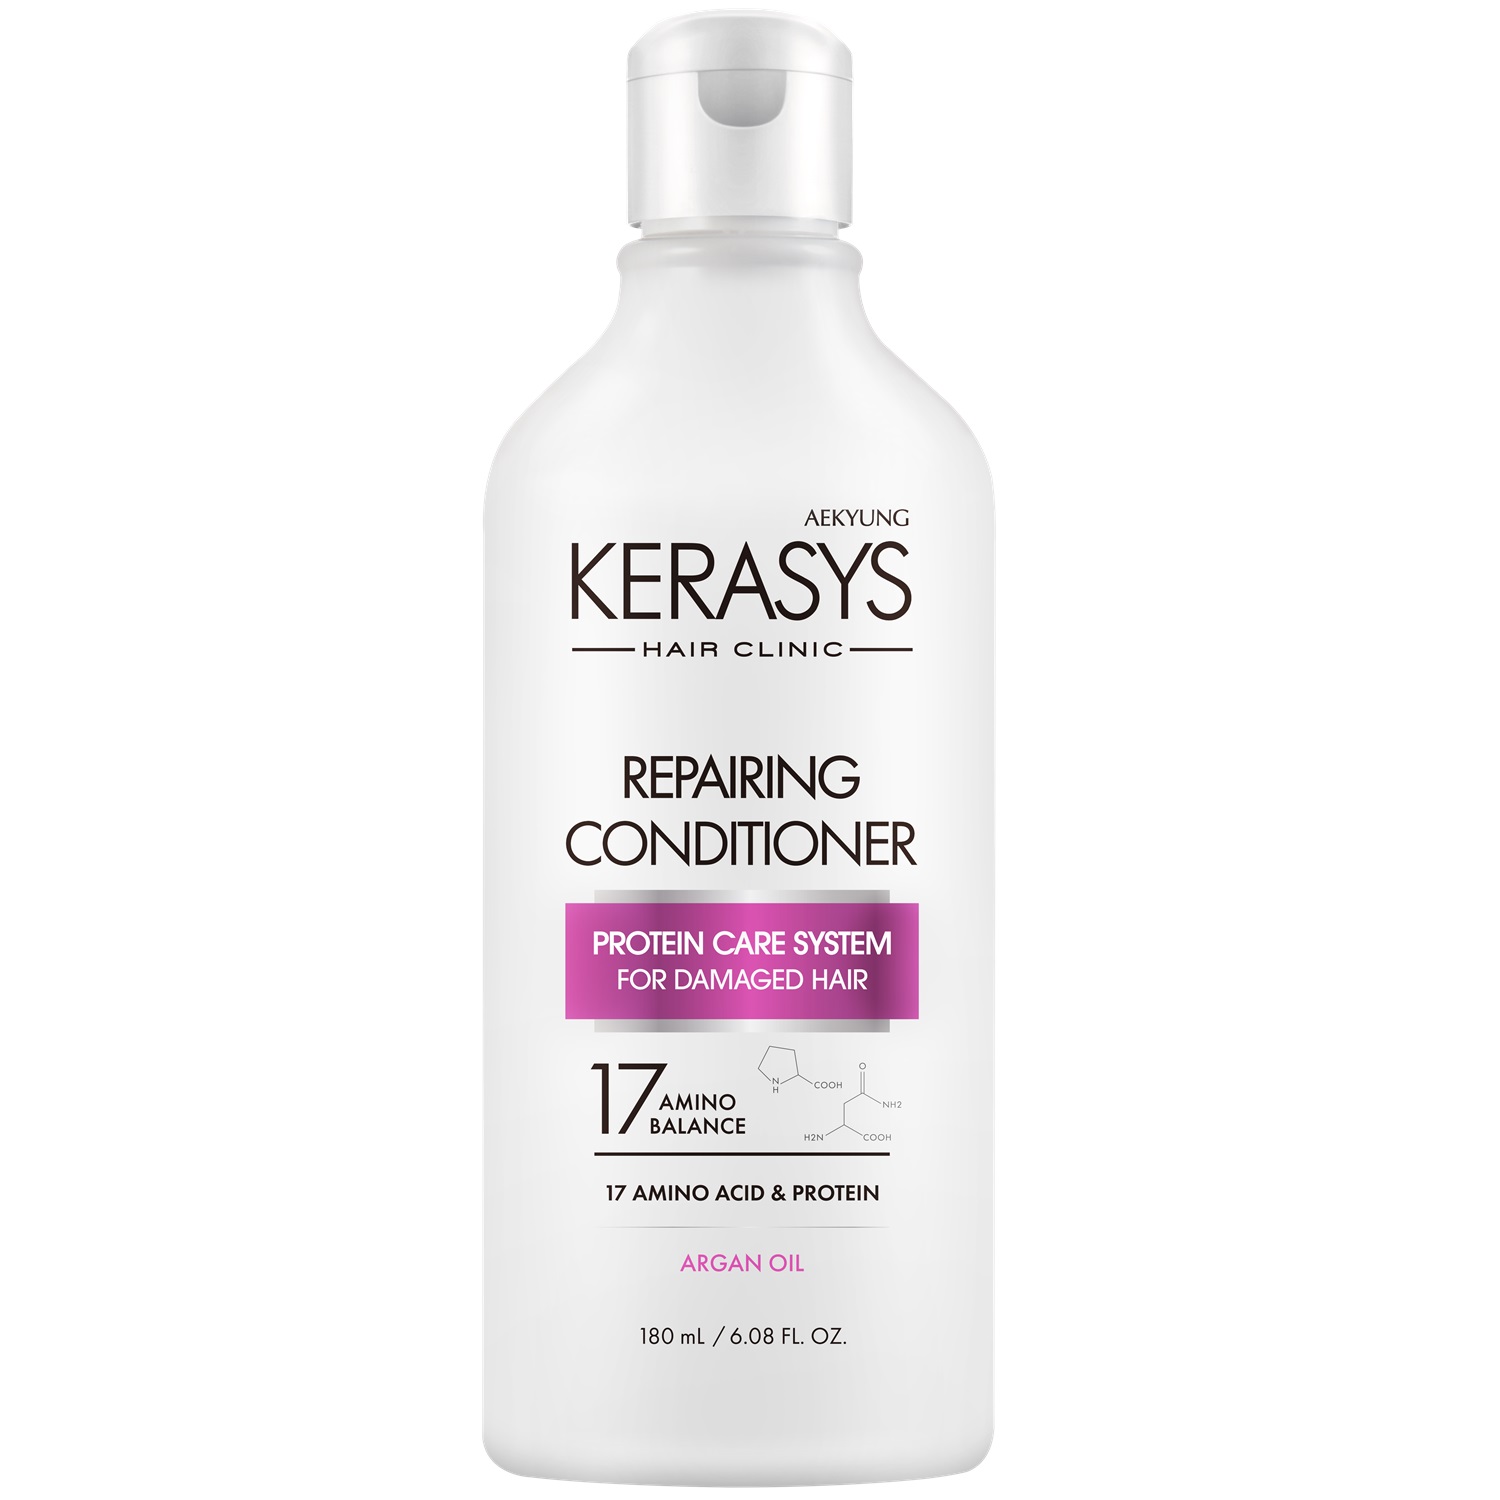 Kerasys Кондиционер для волос восстанавливающий Repairing, 180 мл (Kerasys, Hair Clinic)